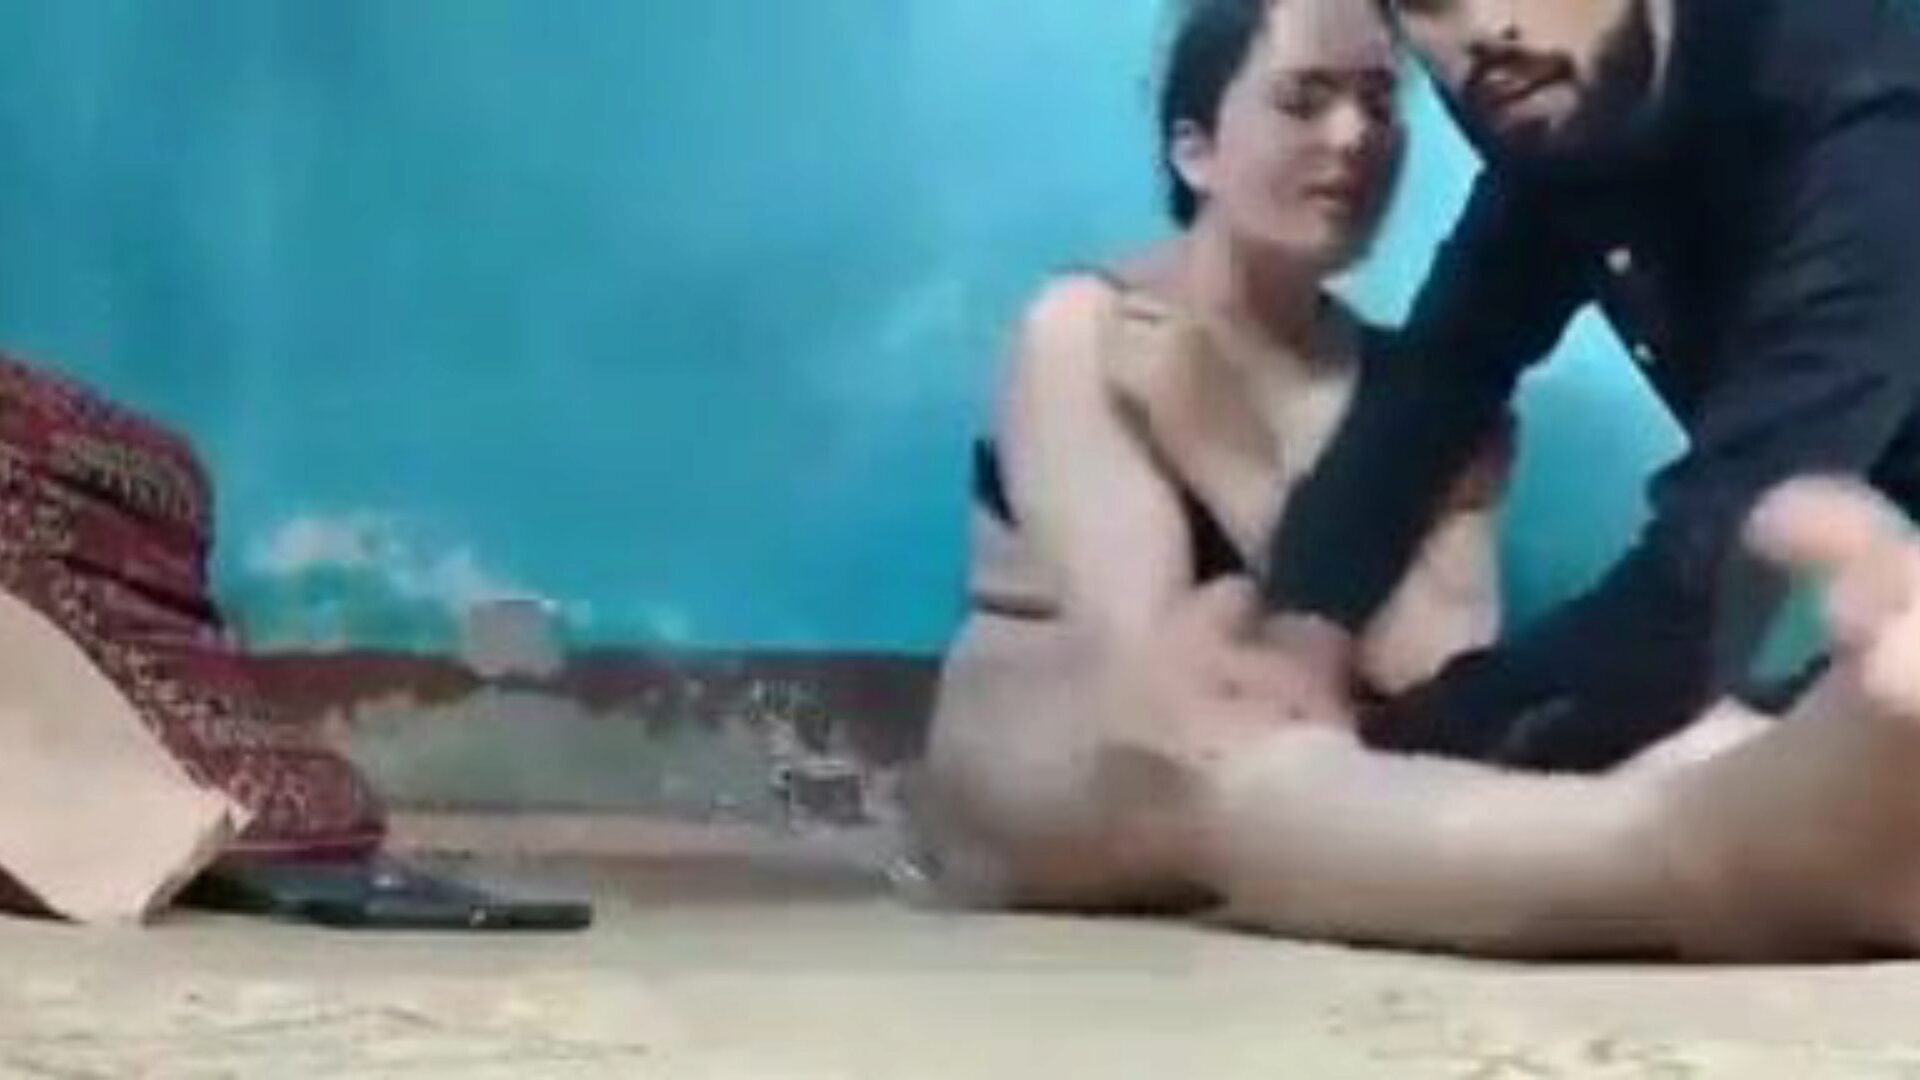 кашмирски секс видео: бесплатни индијски порно видео 69 - кхамстер гледајте кашмирски секс видео цев, бесплатно избачен видео на кхамстер, са најсекси колекцијом индијског ккк бесплатног секса и сцена порно епизода